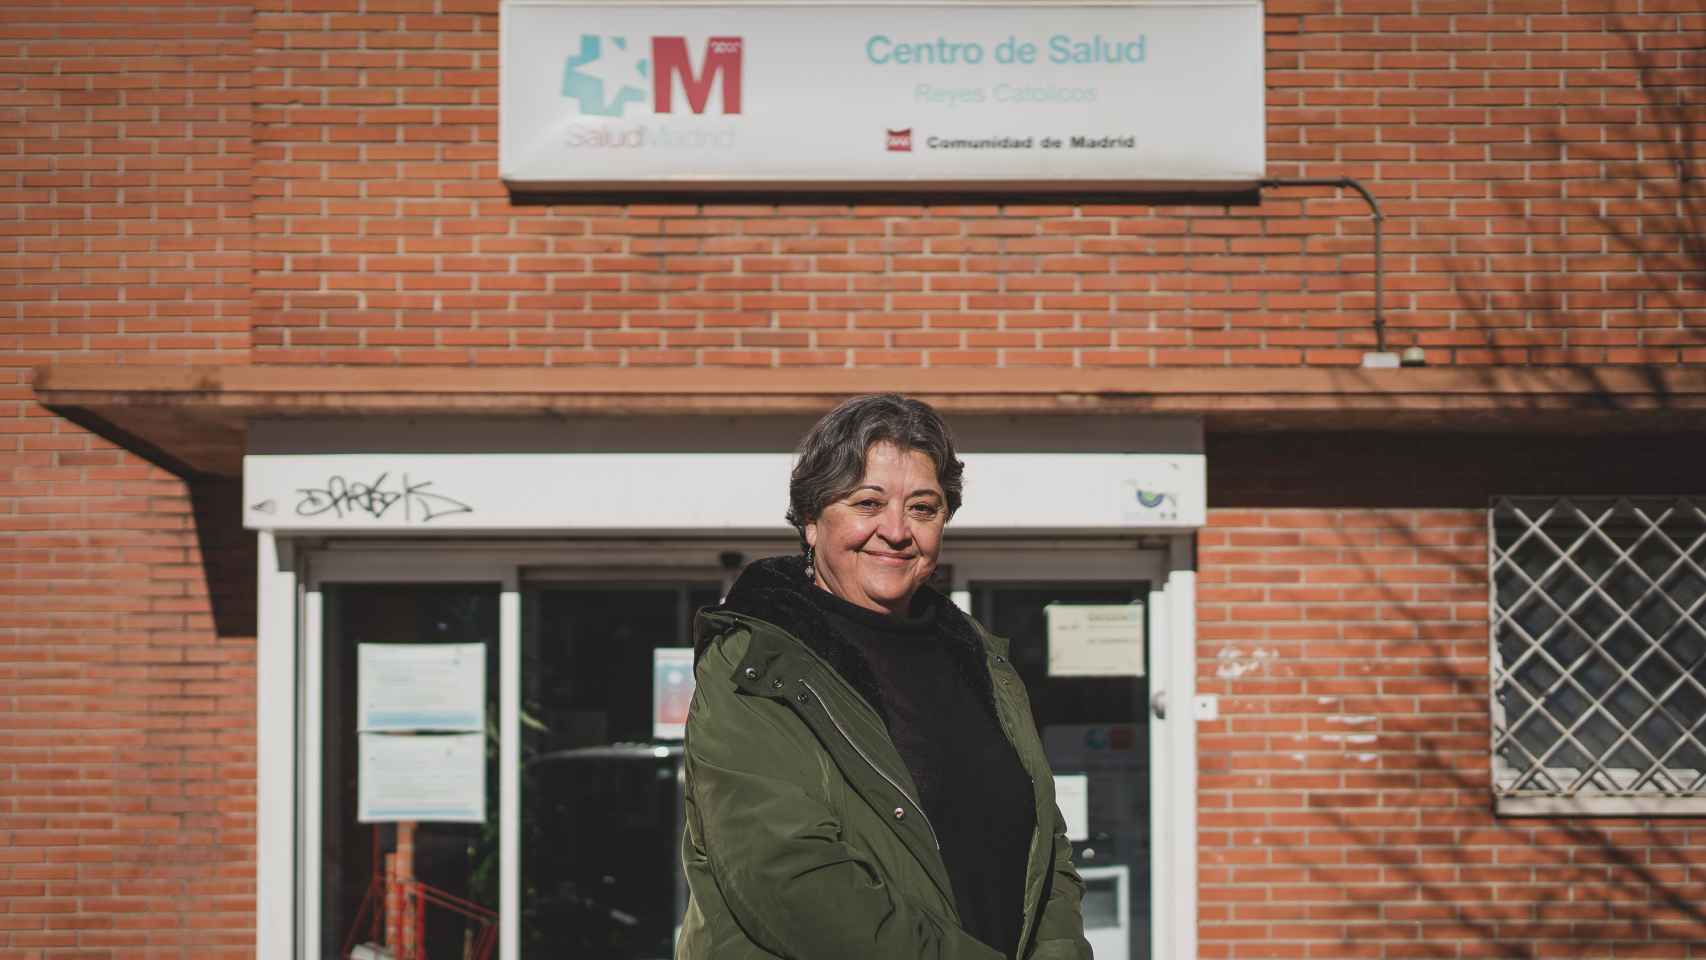 María Luisa López Díaz-Ufano, frente al centro de salud donde trabaja.